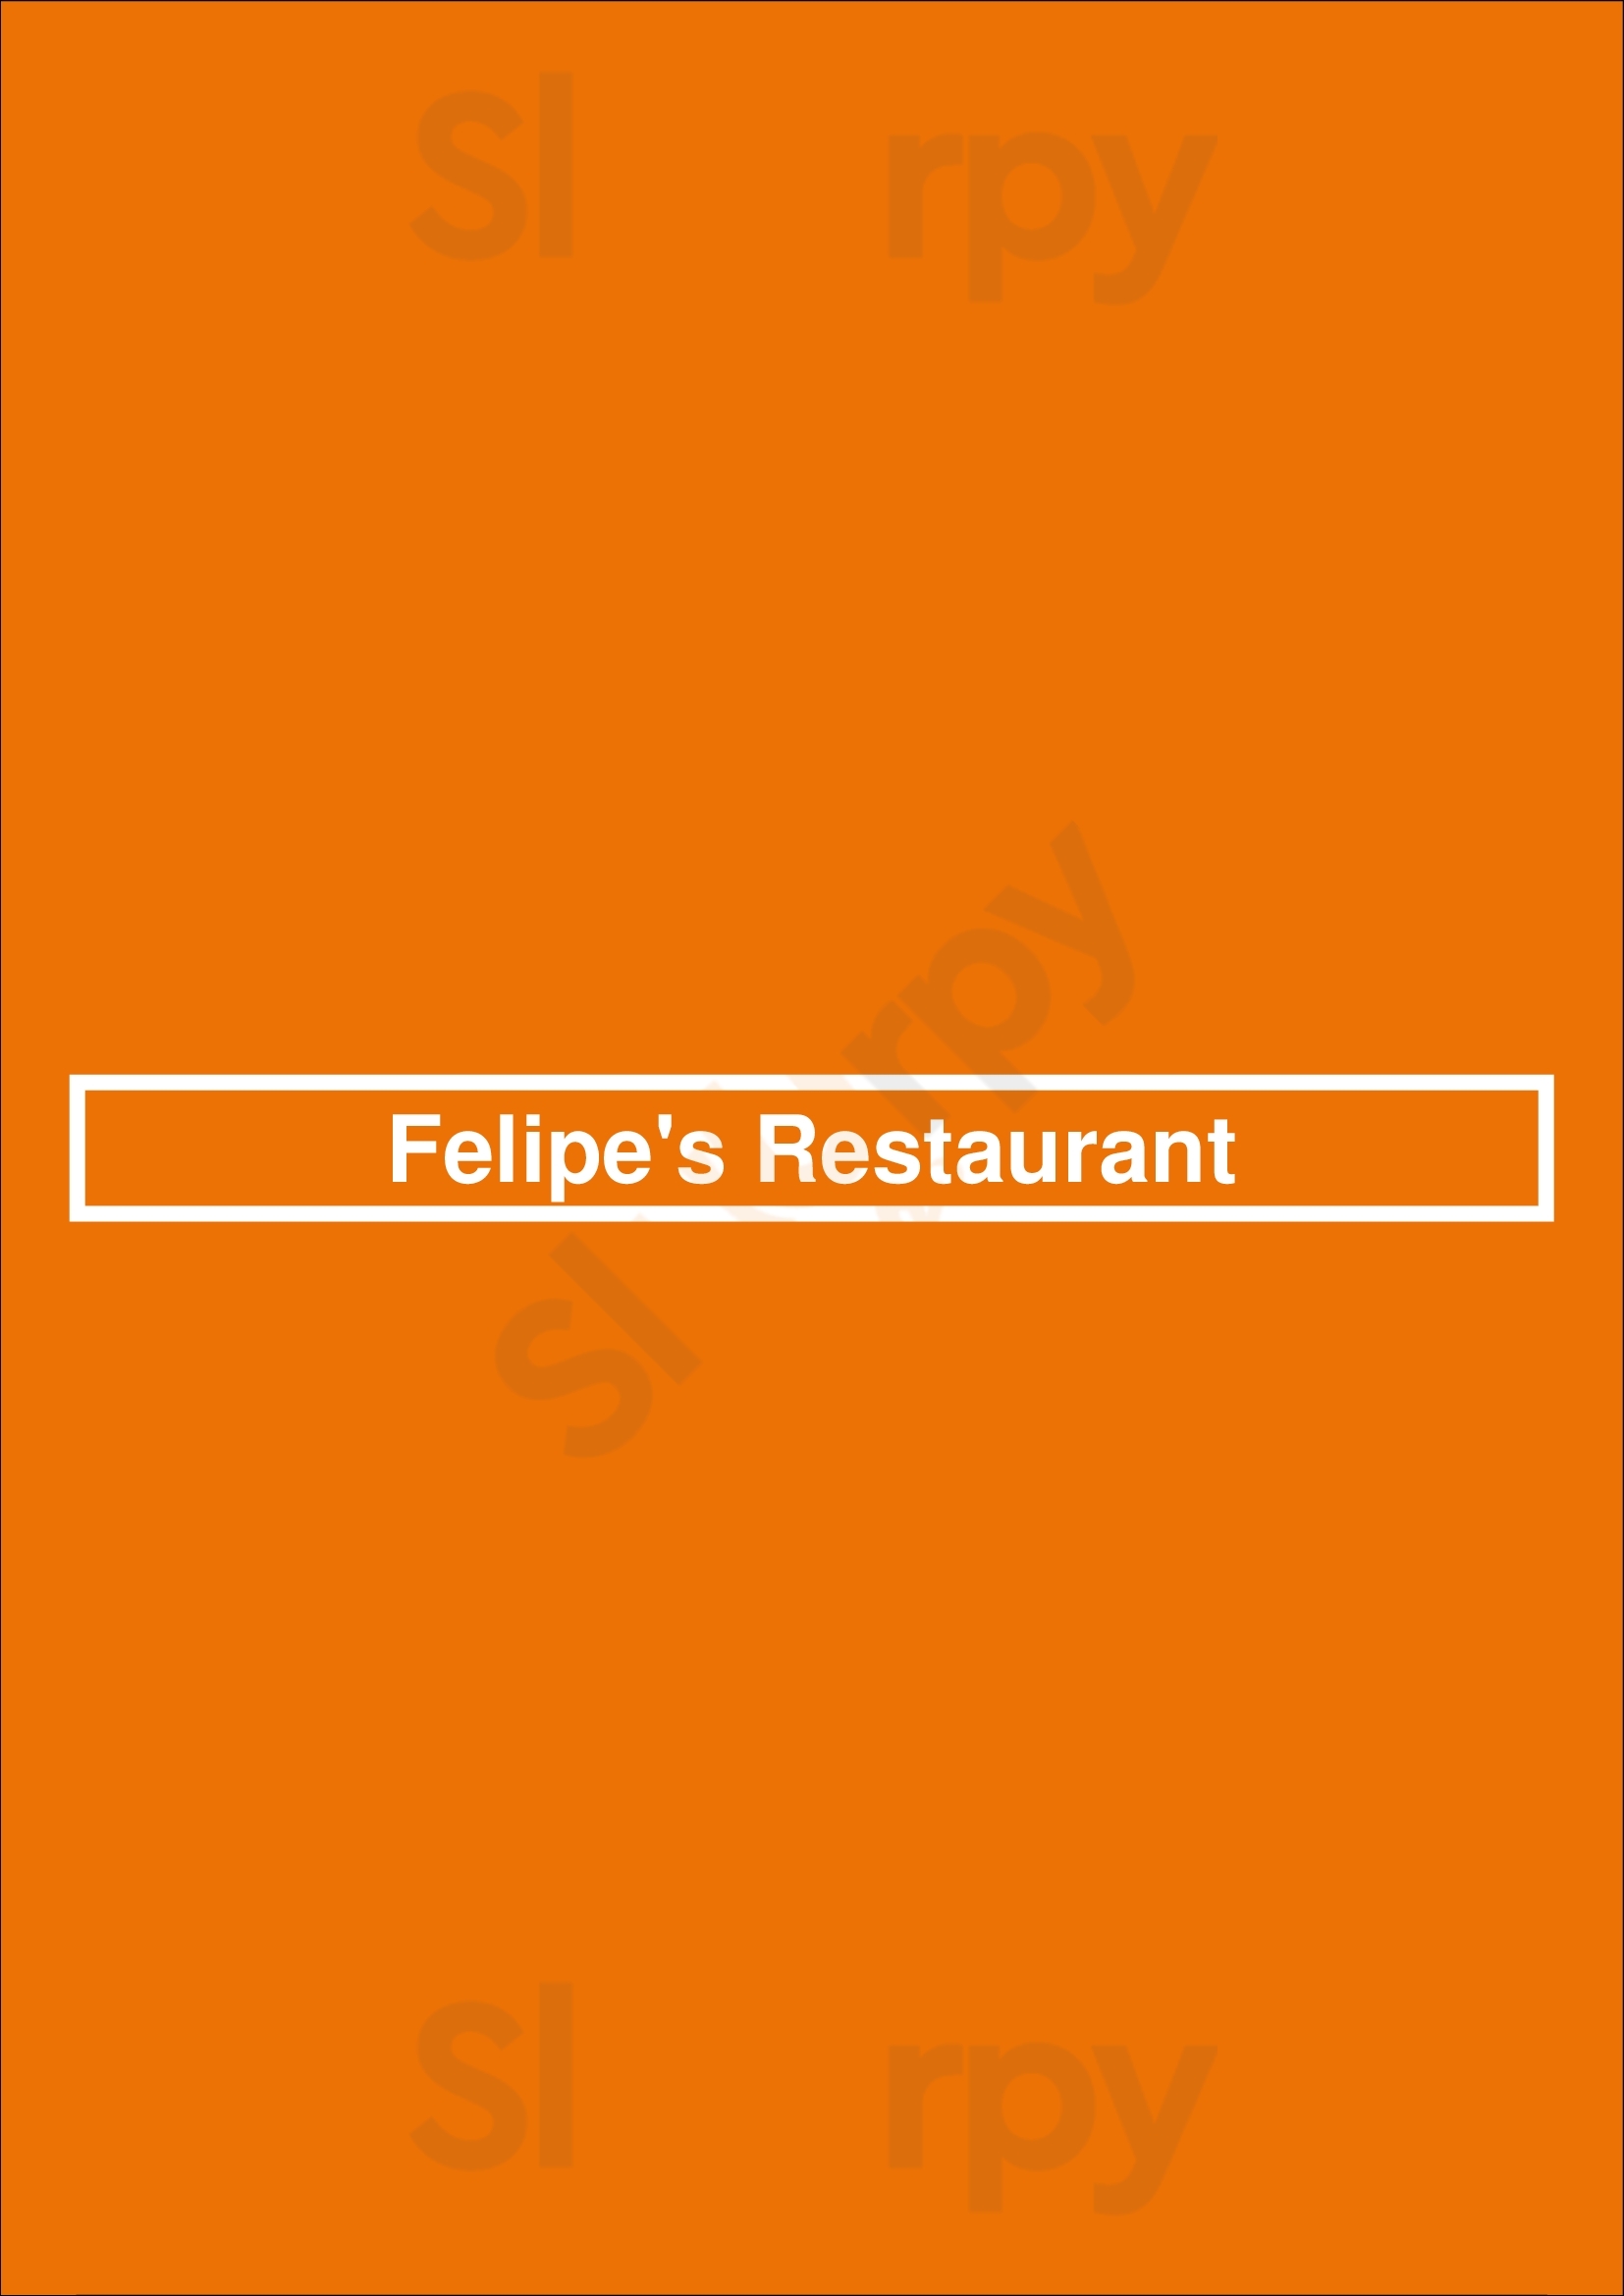 Felipe's Restaurant Wichita Menu - 1